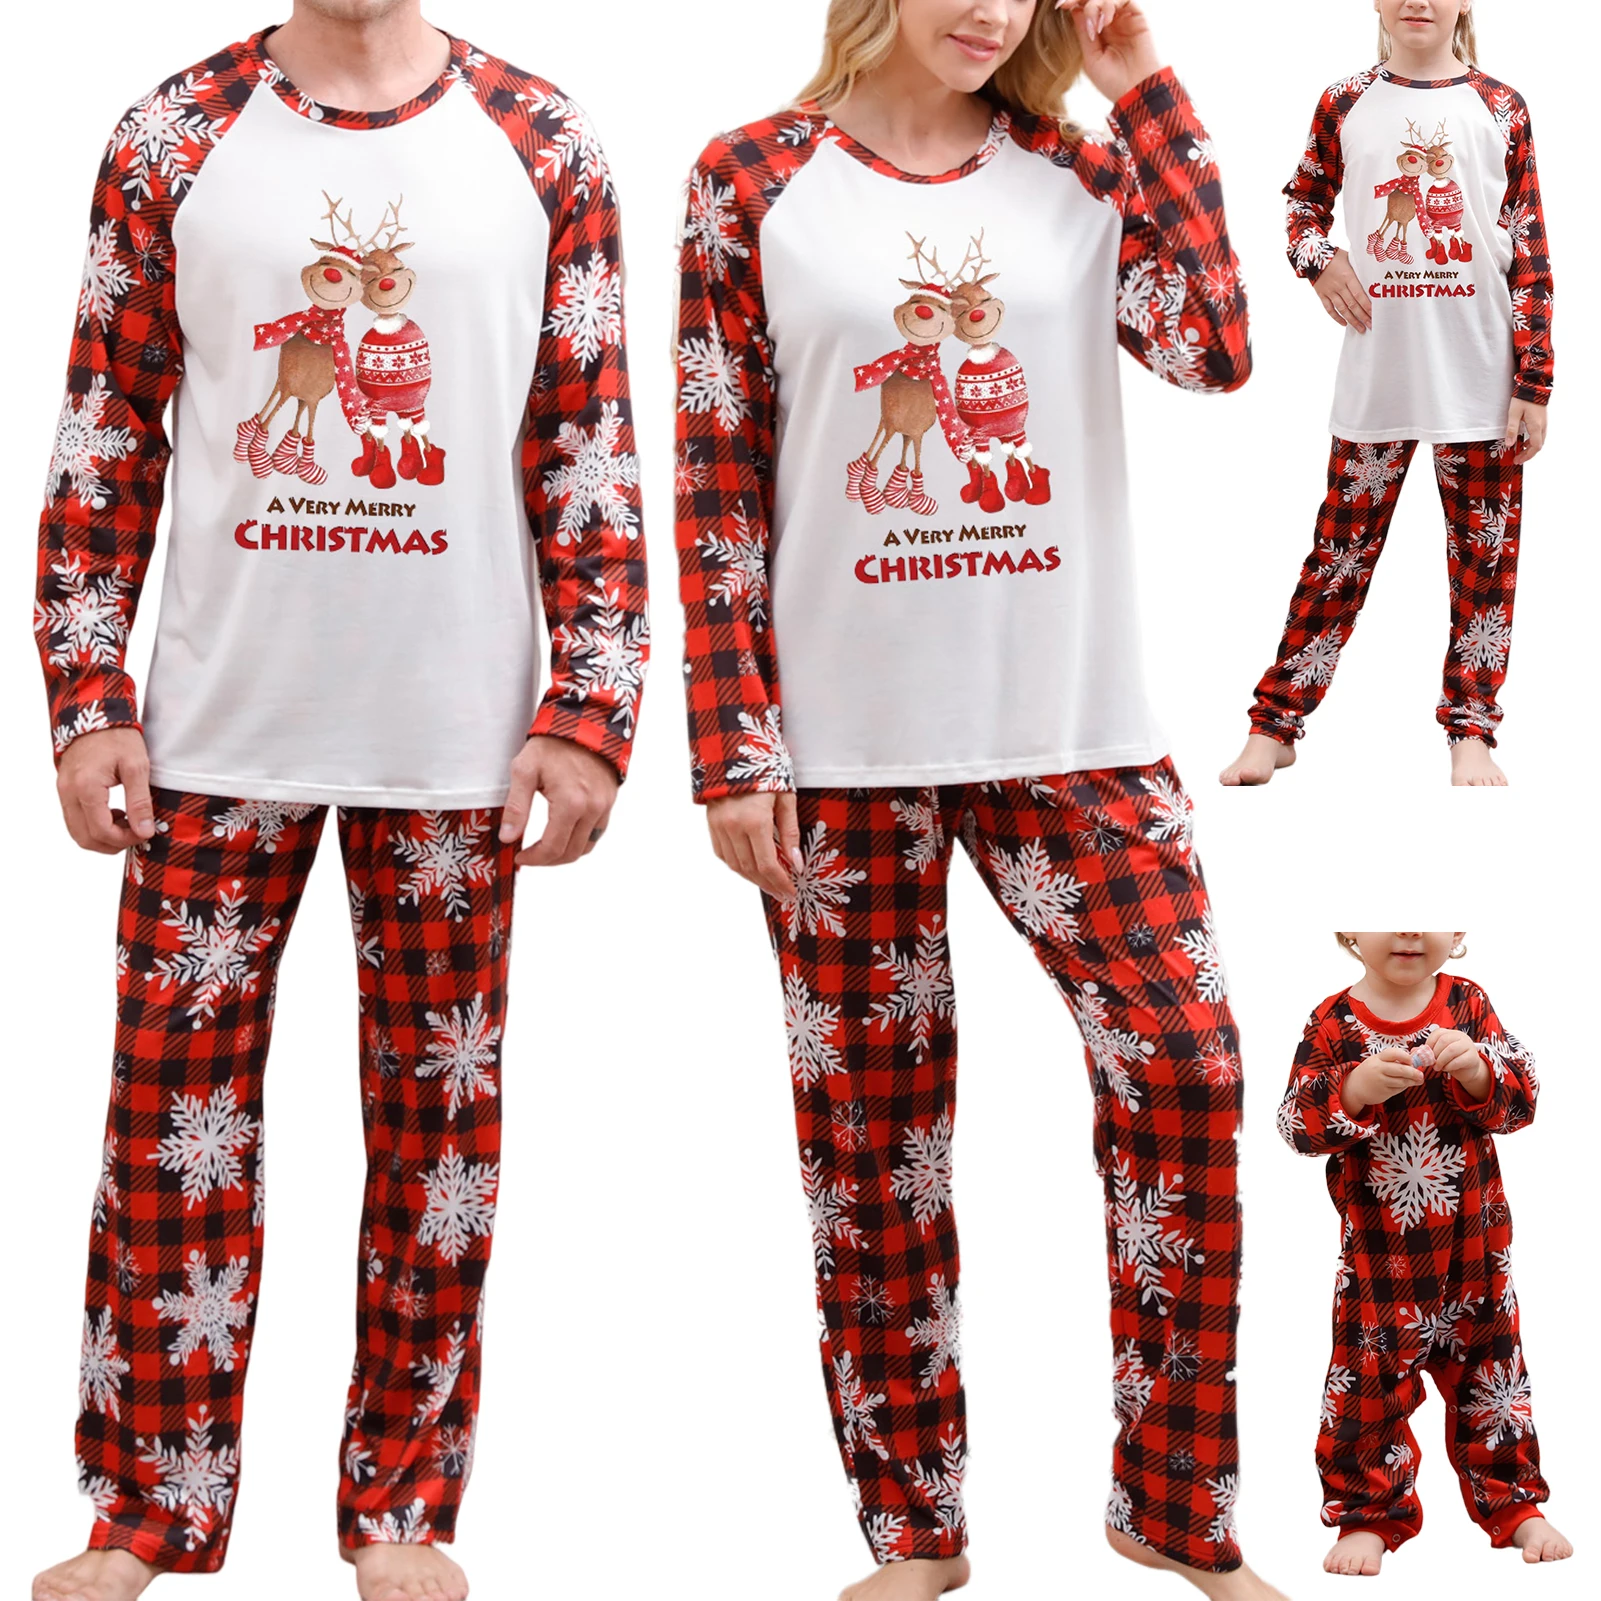 Комплекты рождественских пижам для всей семьи с красными мишками для мамы и детей, детская одежда для сна, рождественская пижама, домашняя одежда, детские пижамы